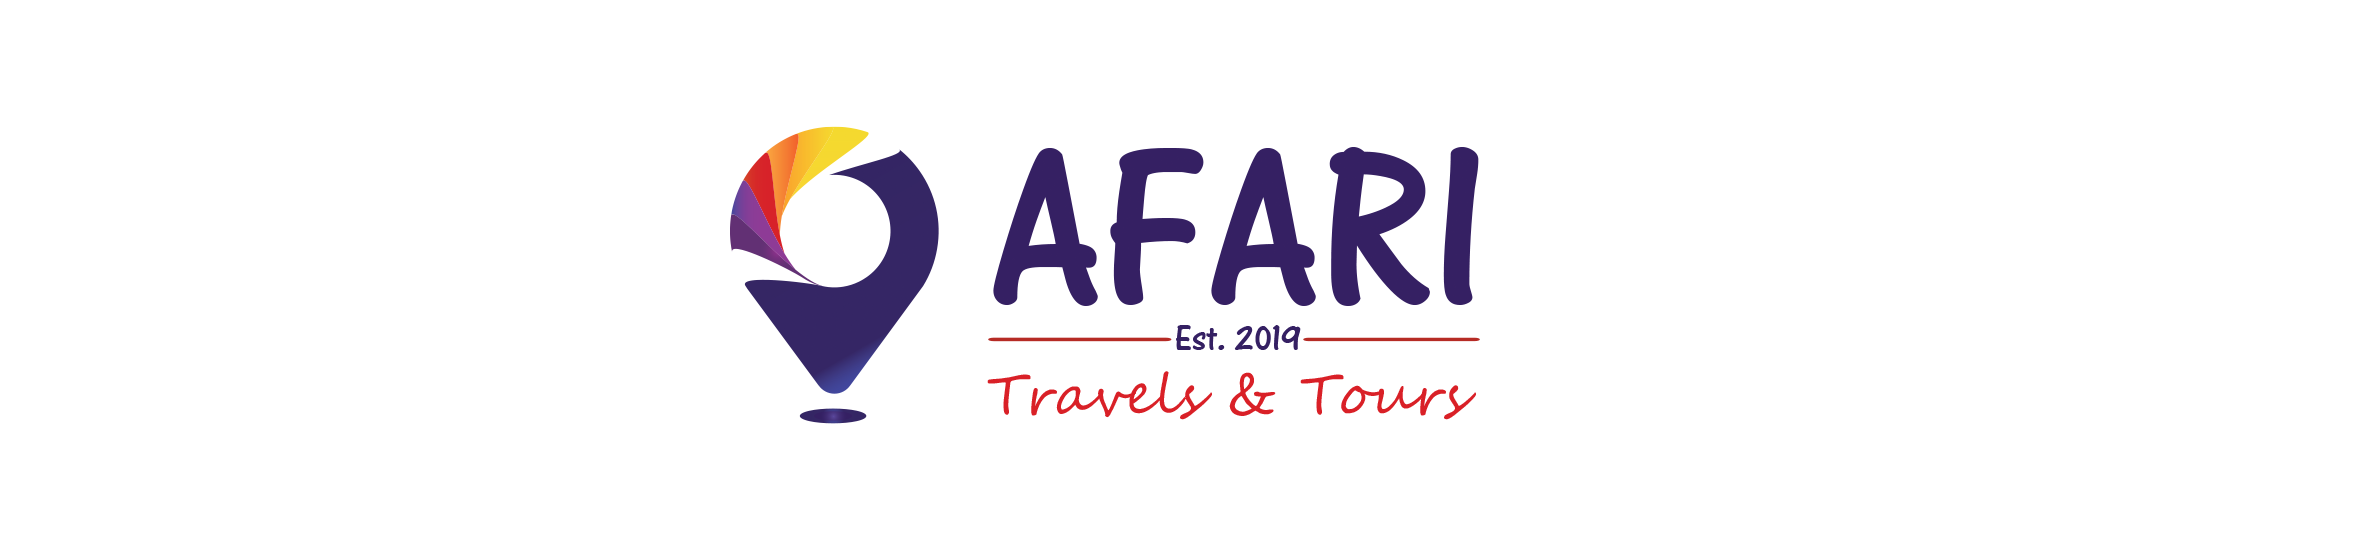 AFARI Travels & Tours